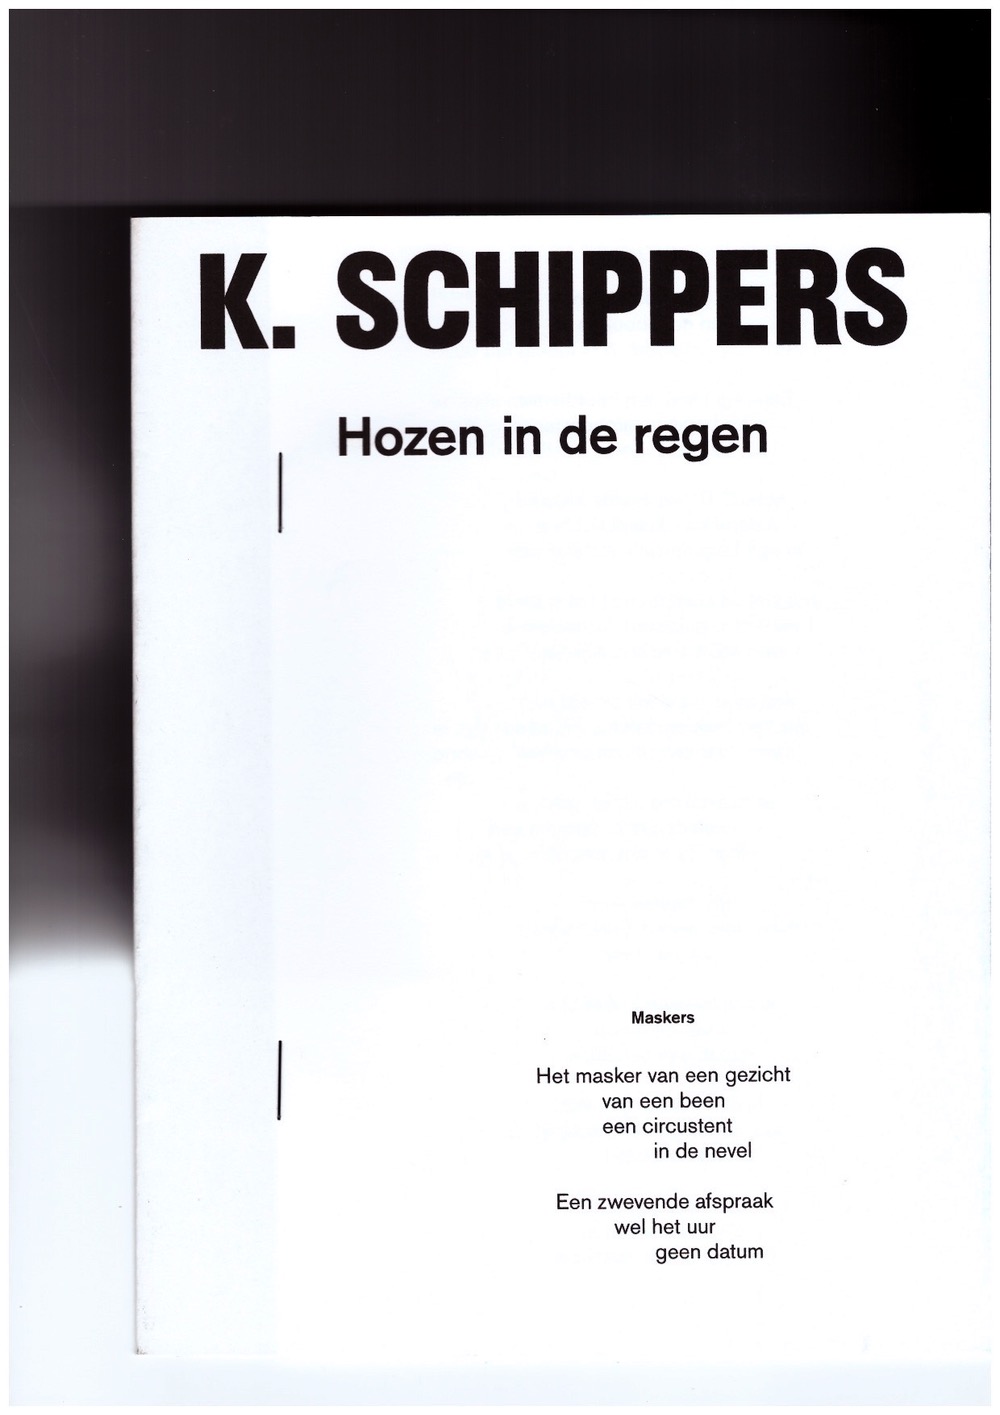 SCHIPPERS, K. - Hozen in de regen / Hailing in the rain